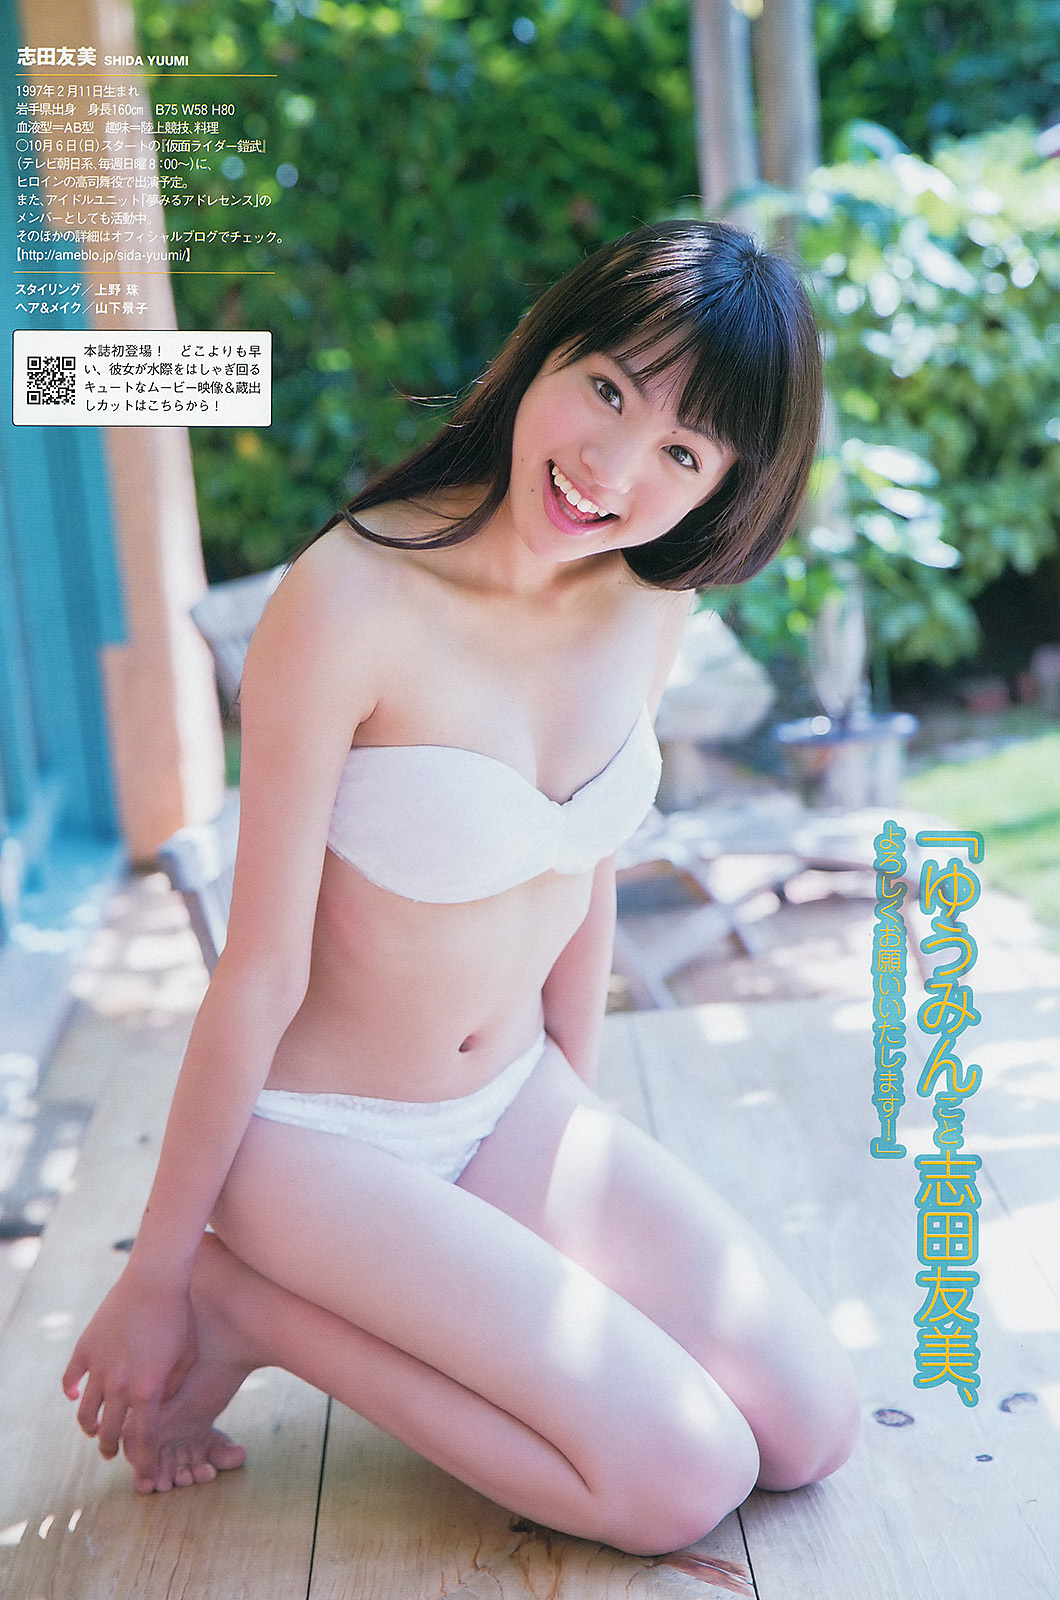 [weekly Playboy] No.37 Yoshida hirohita, Yoshiko matsugawa, Aidong hongchaitian AMI